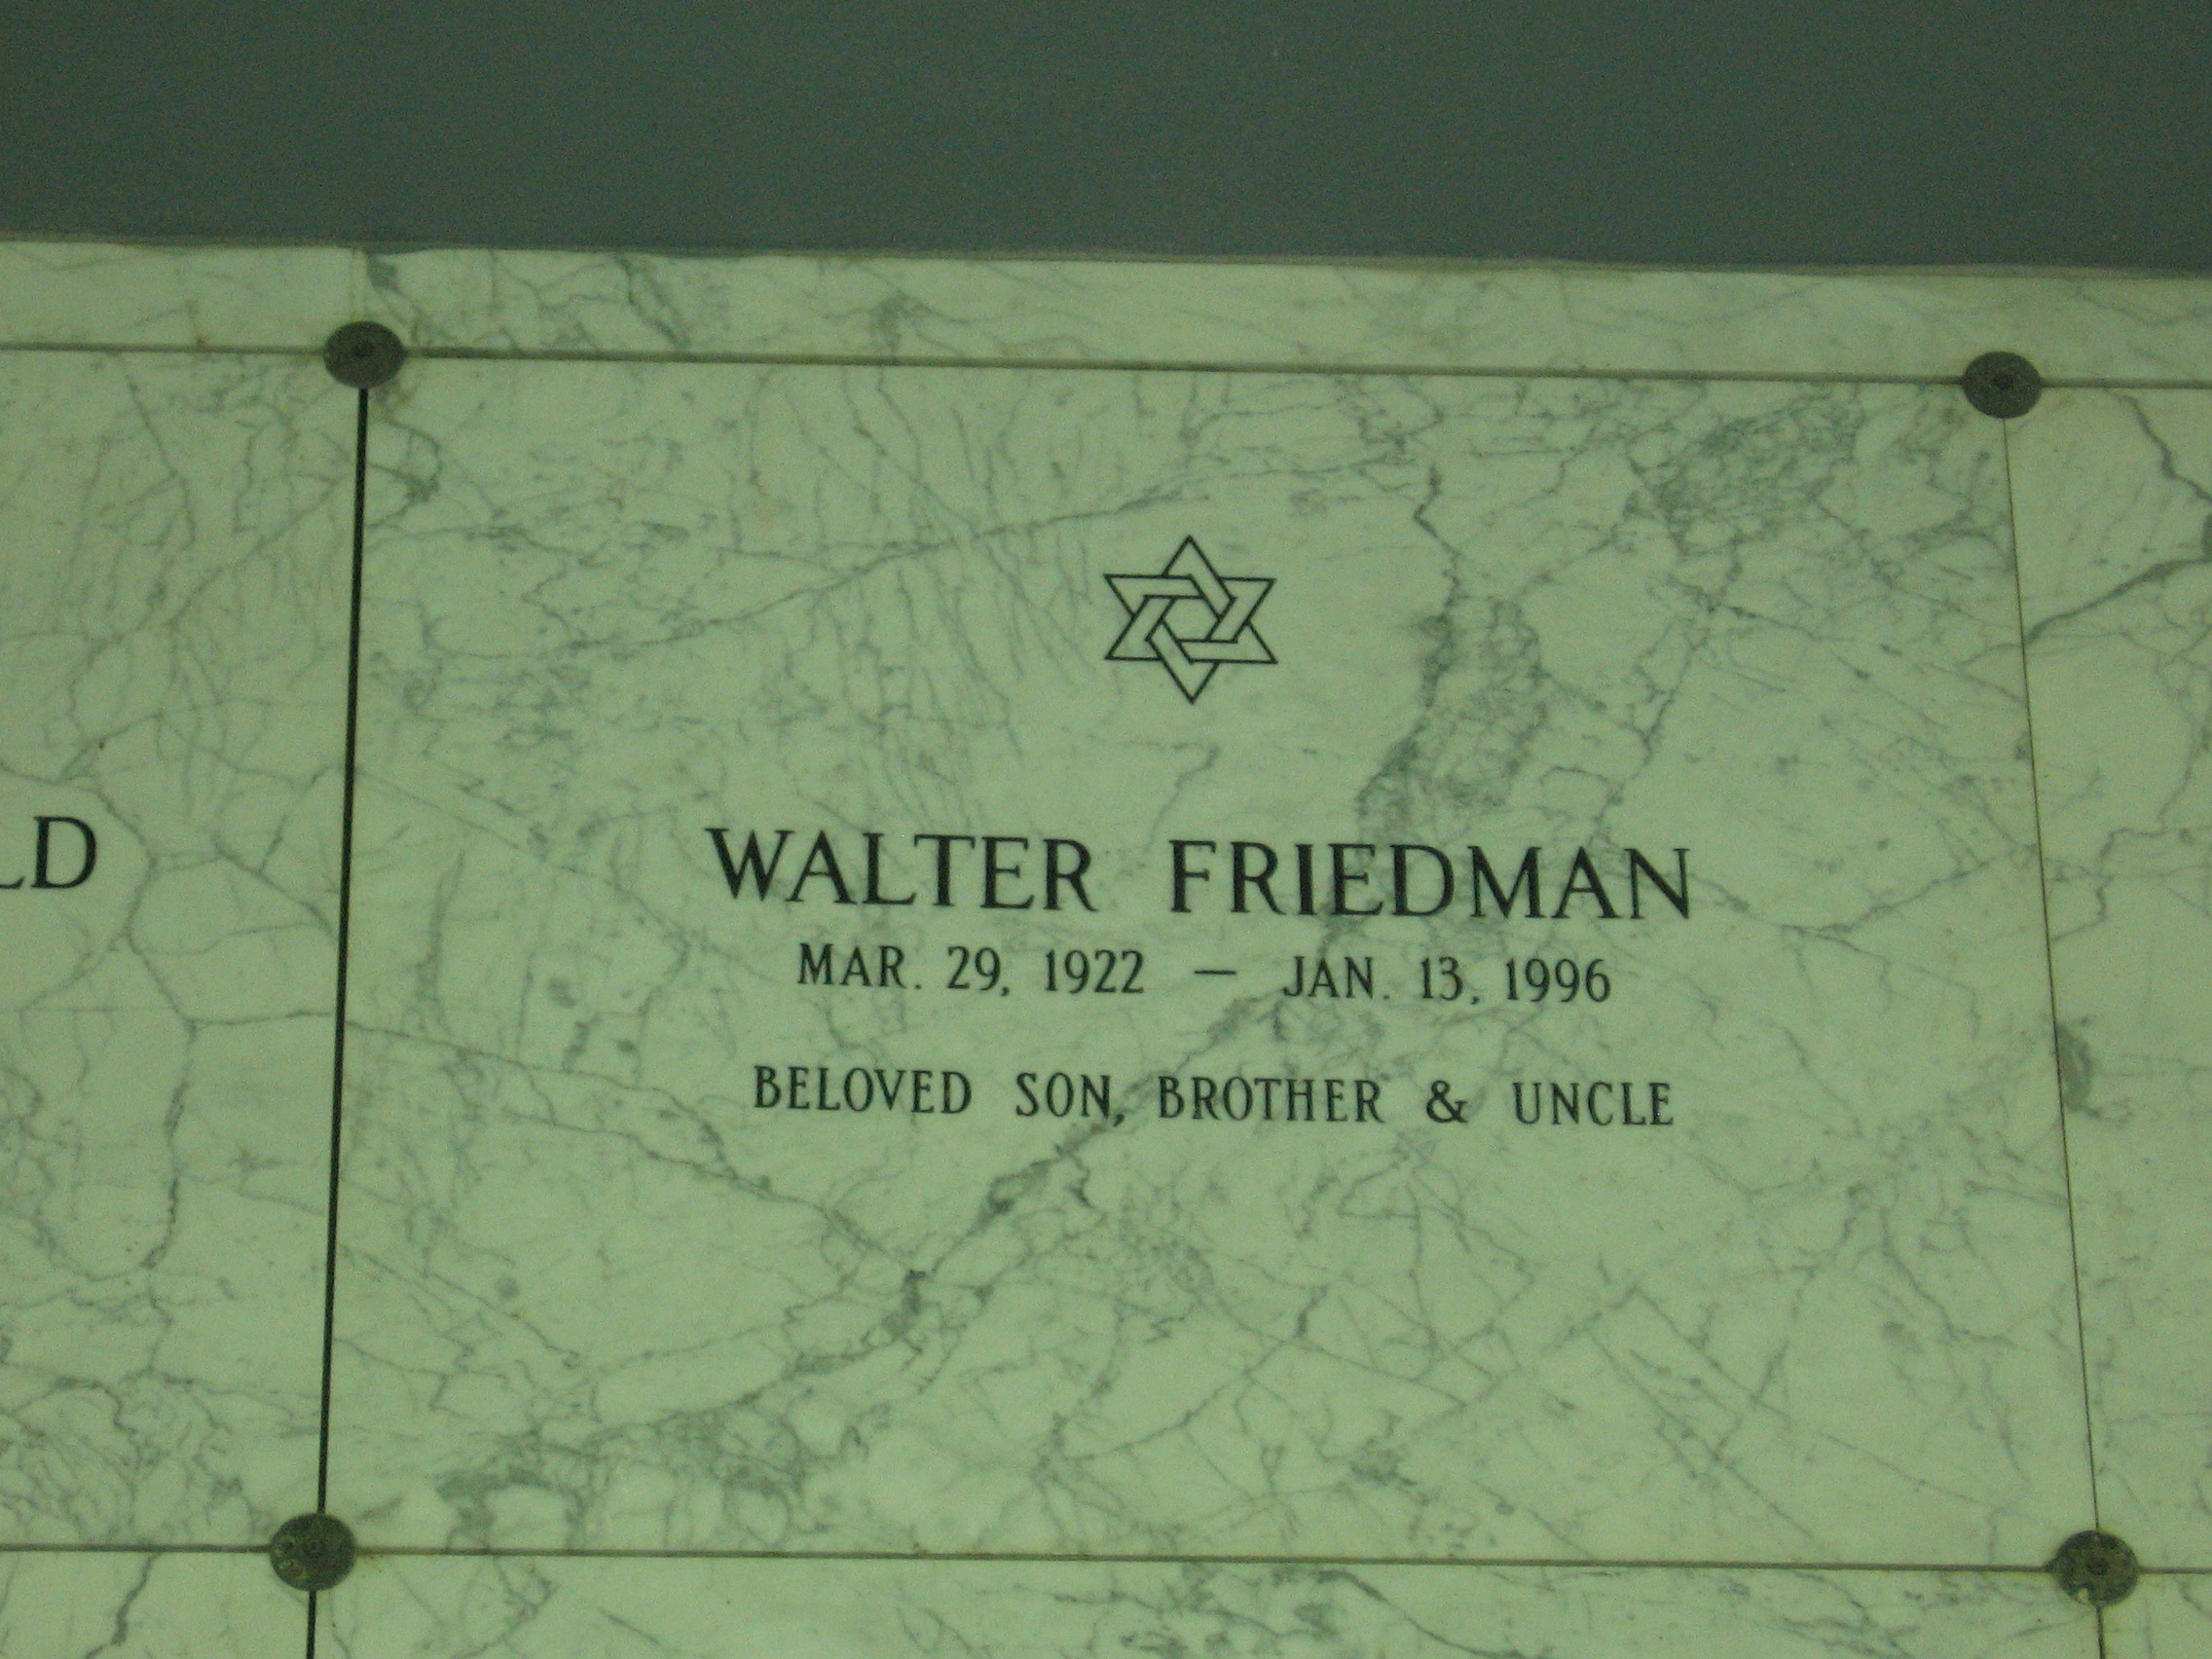 Walter Friedman